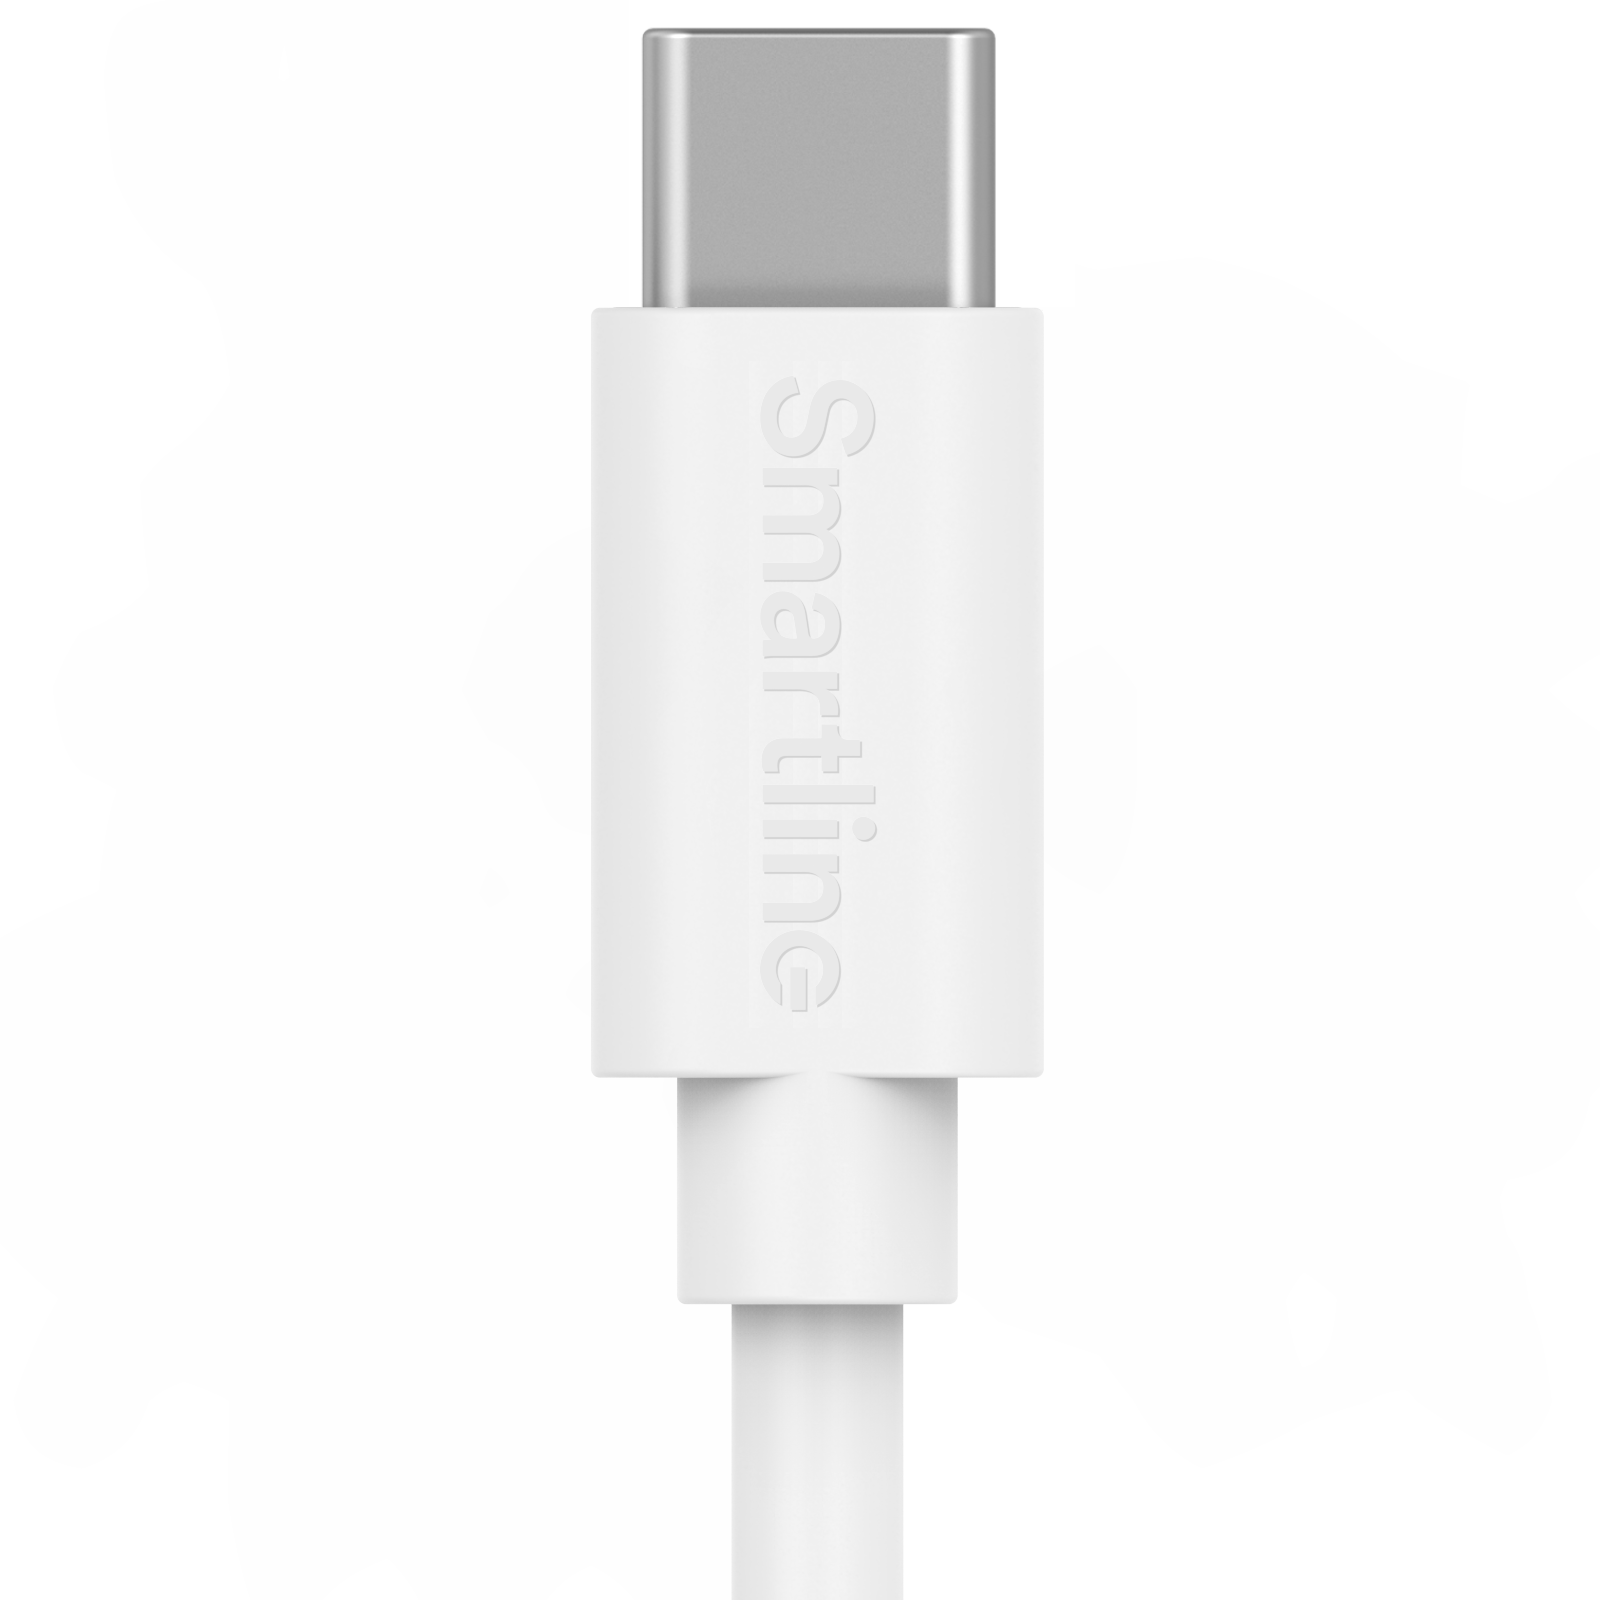 Câble USB-C vers Lightning 3 mètres, blanc